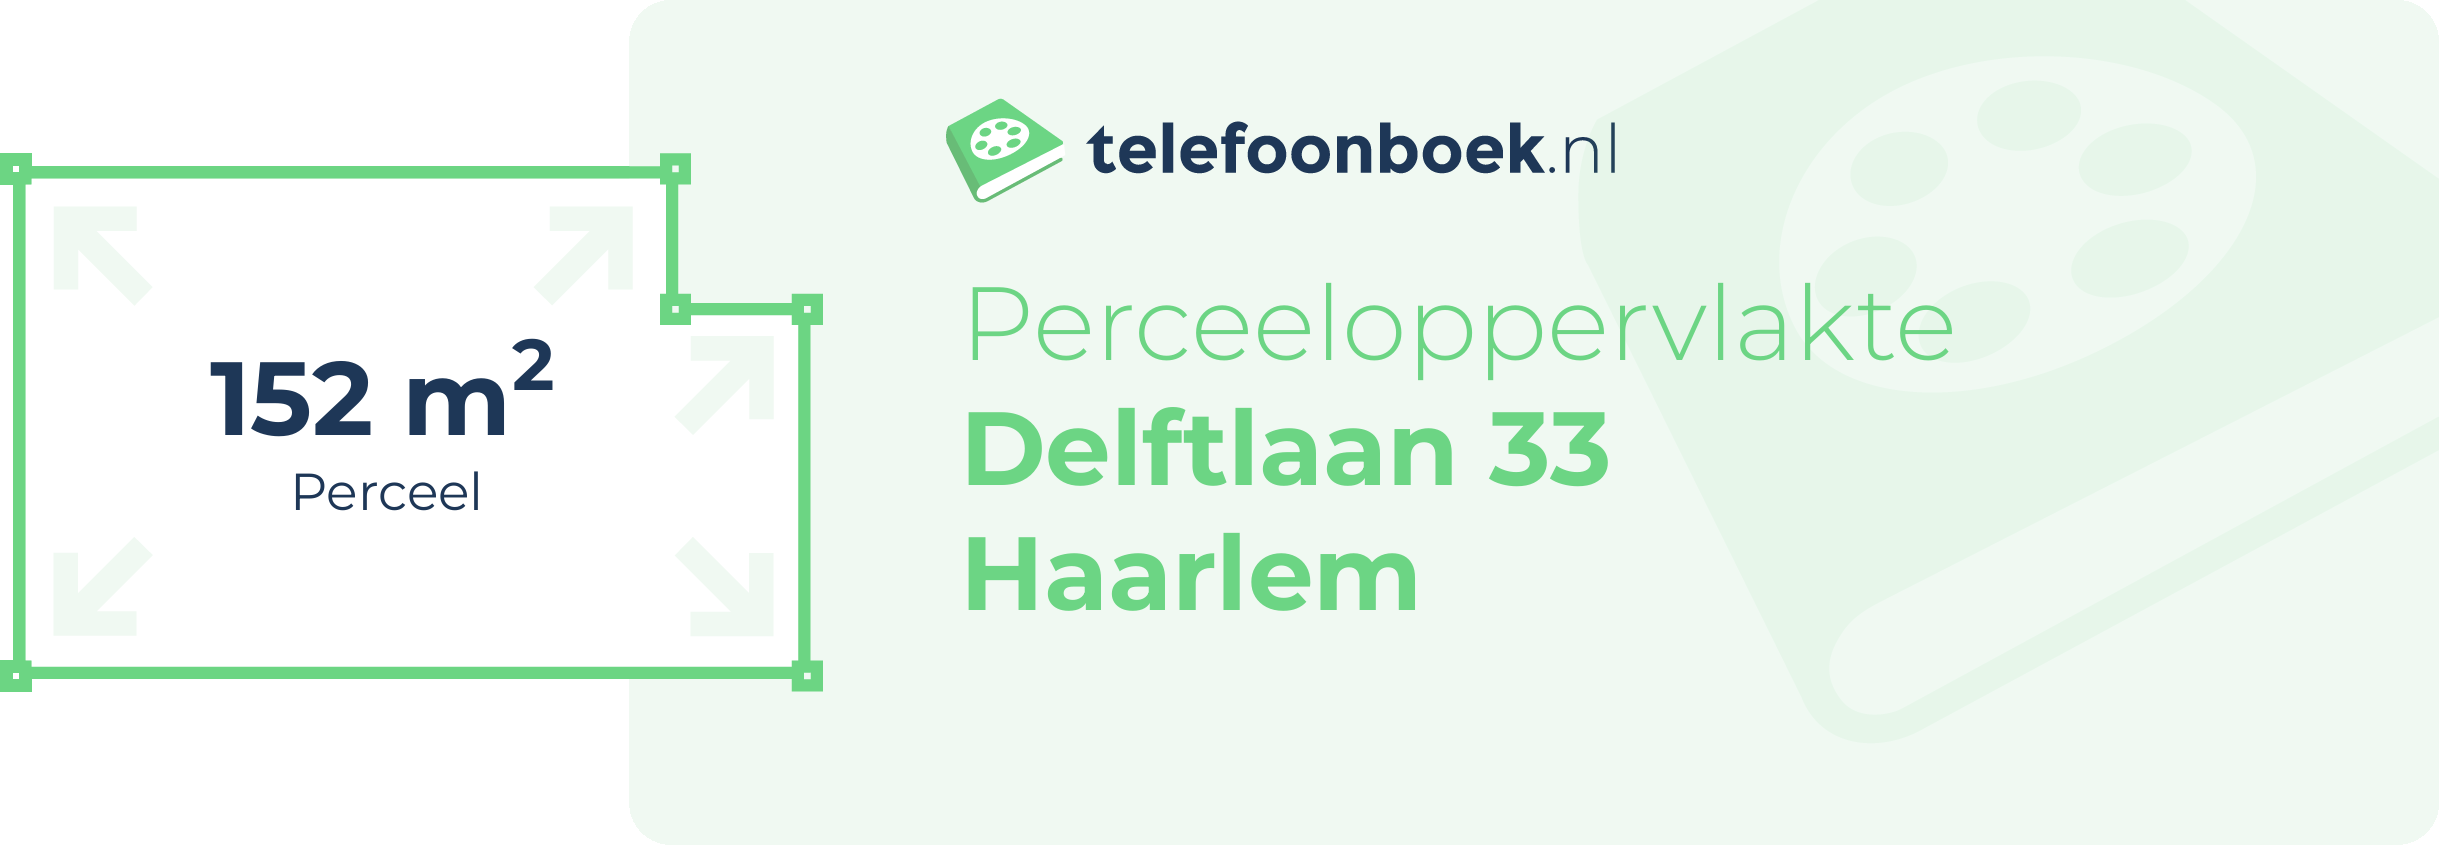 Perceeloppervlakte Delftlaan 33 Haarlem